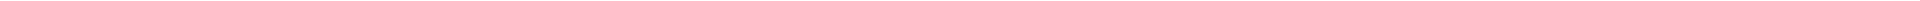 Элайнеры - цены на капы для выравнивания (исправления) прикуса, цены в Астане, Алматы, Атырау, Усть-Каменогорск, Уральск, Кокшетау в Казахстане, фото 20